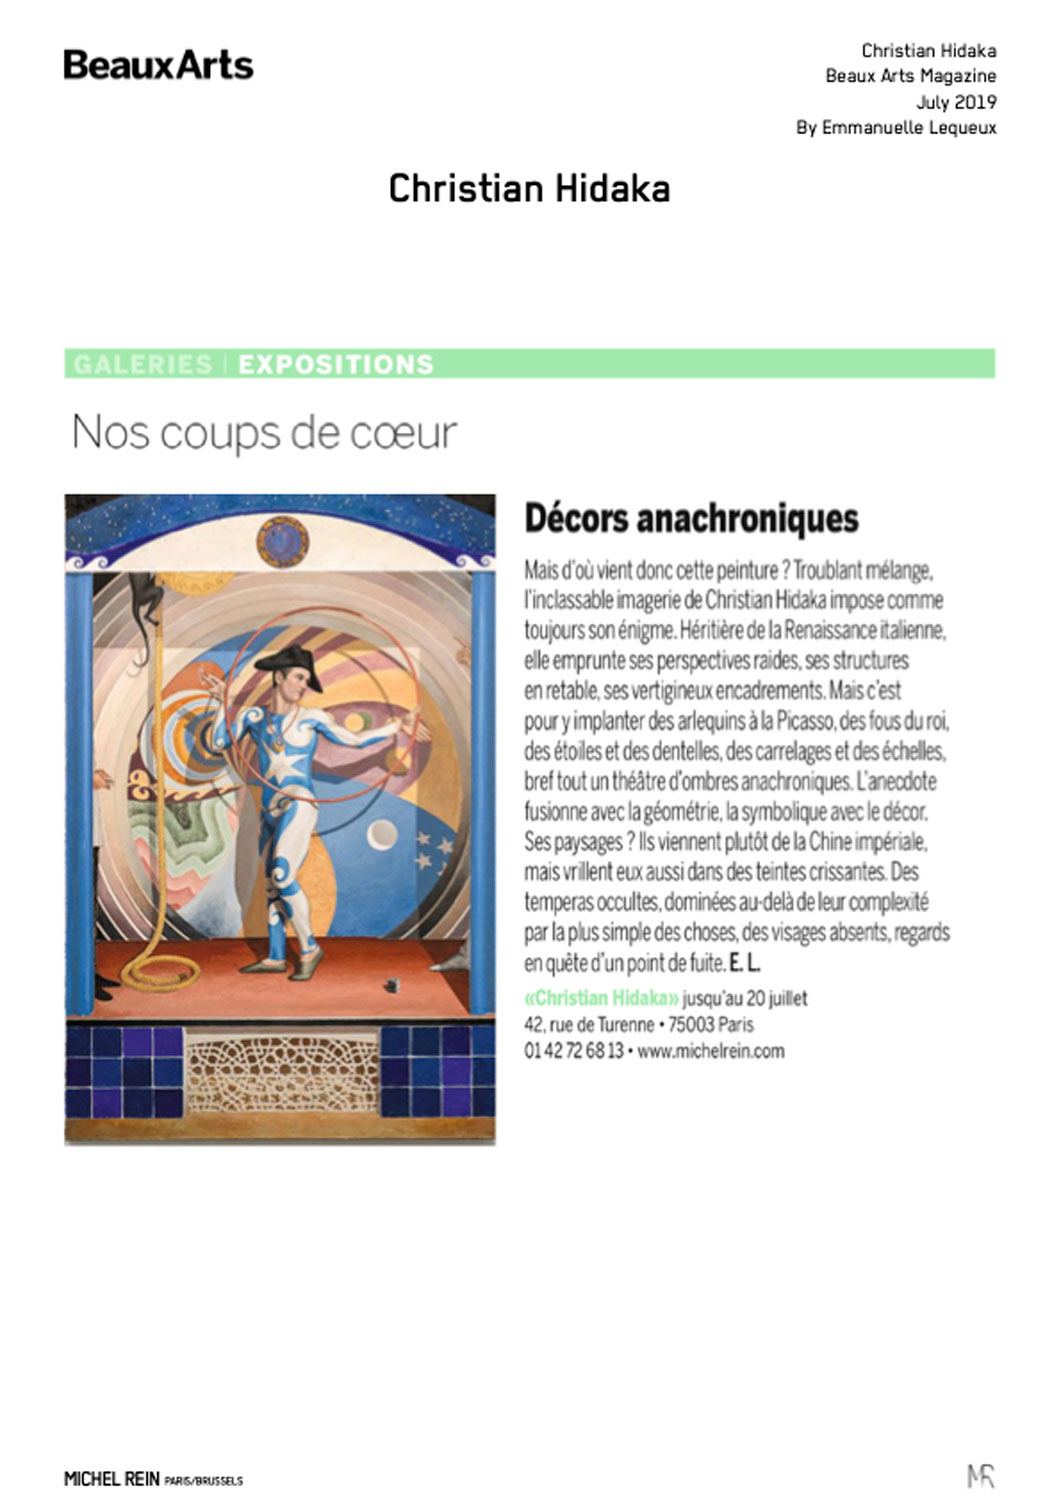 Décors anachroniques - Beaux Arts Magazine